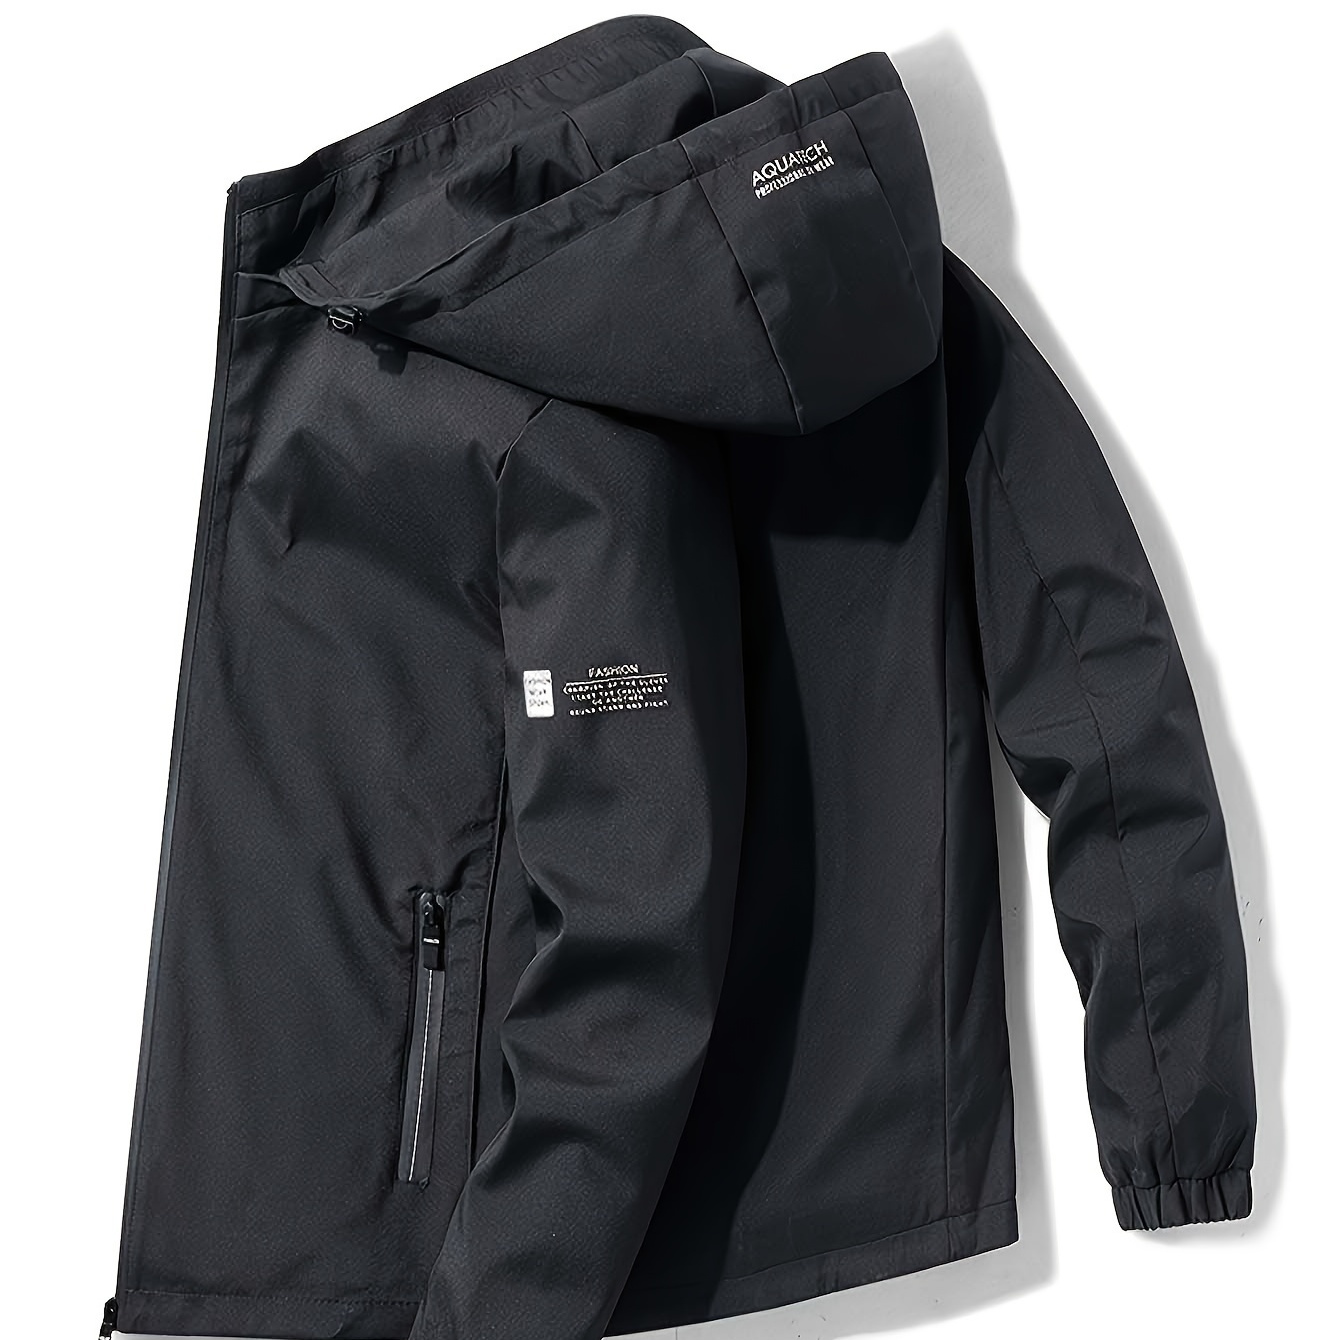 

Men's Athletic Sports Jacket, Casual Outdoor Windbreaker Coat, Waterproof Hooded Top, Zipper Closure, Lightweight